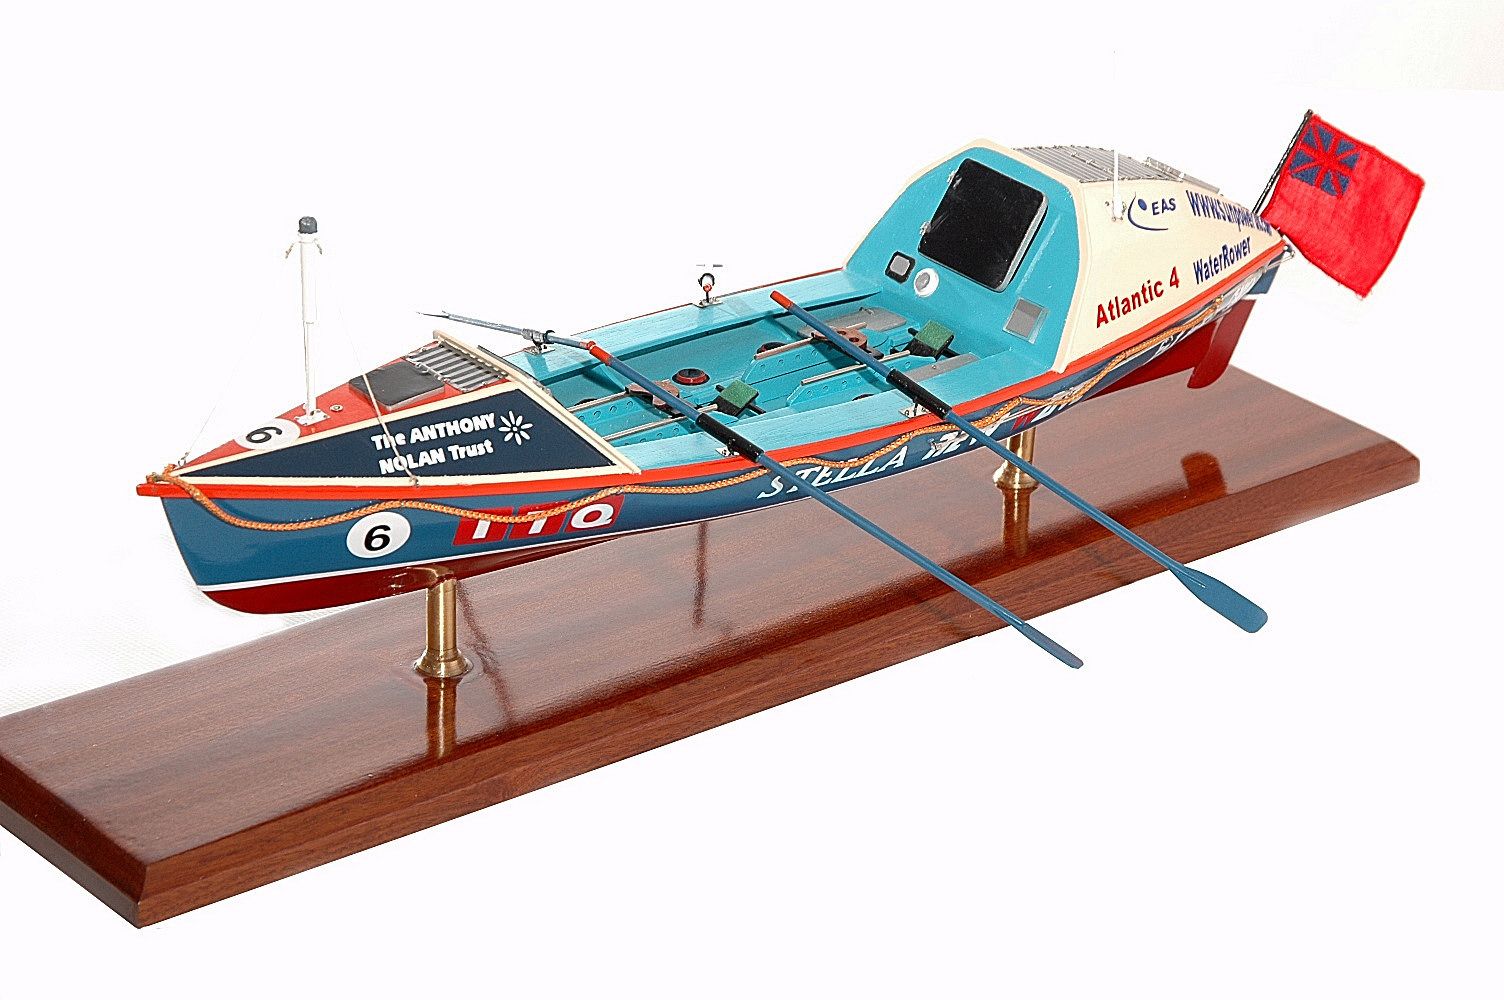 Ocean Rowing Boat